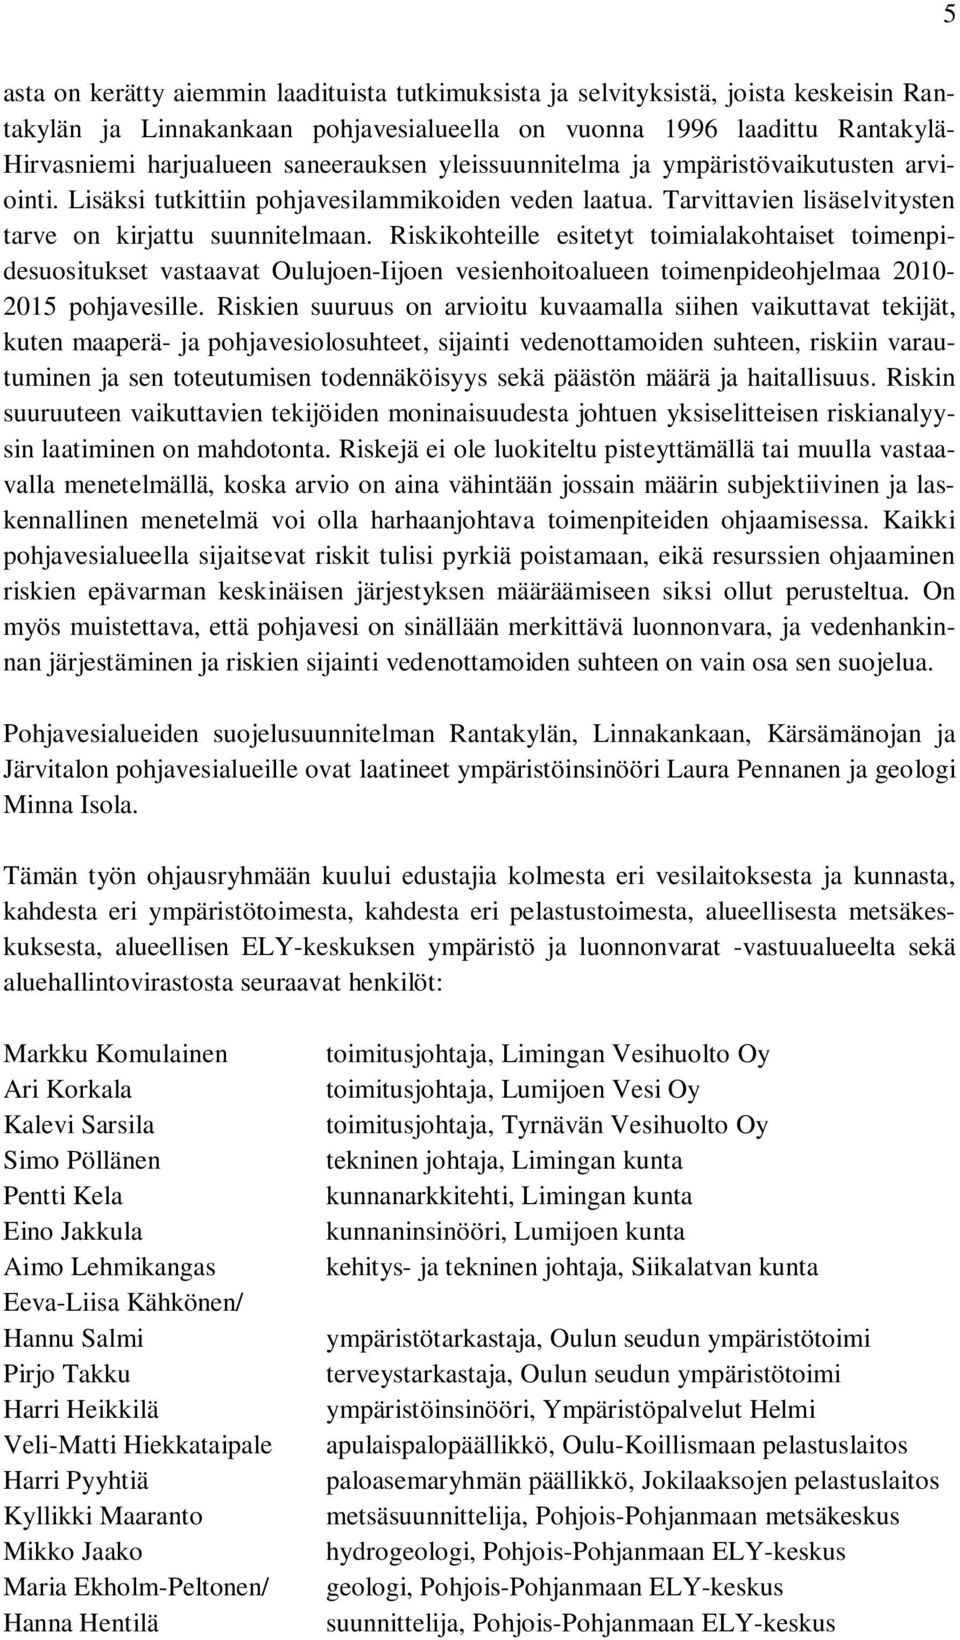 Riskikohteille esitetyt toimialakohtaiset toimenpidesuositukset vastaavat Oulujoen-Iijoen vesienhoitoalueen toimenpideohjelmaa 2010-2015 pohjavesille.